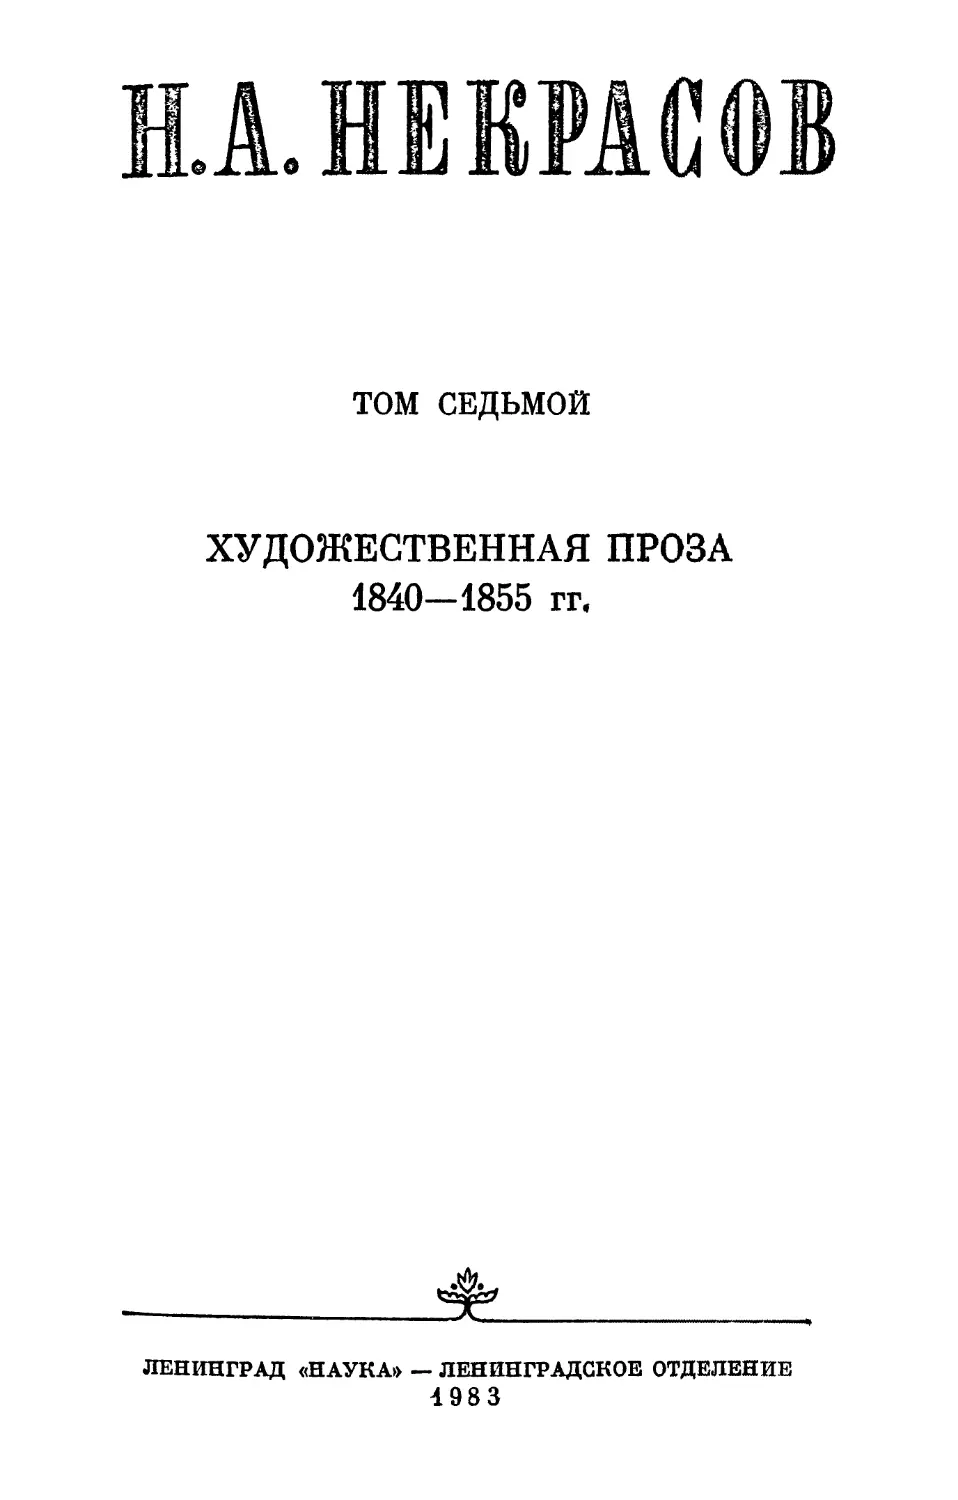 ХУДОЖЕСТВЕННАЯ ПРОЗА 1840-1855 гг.